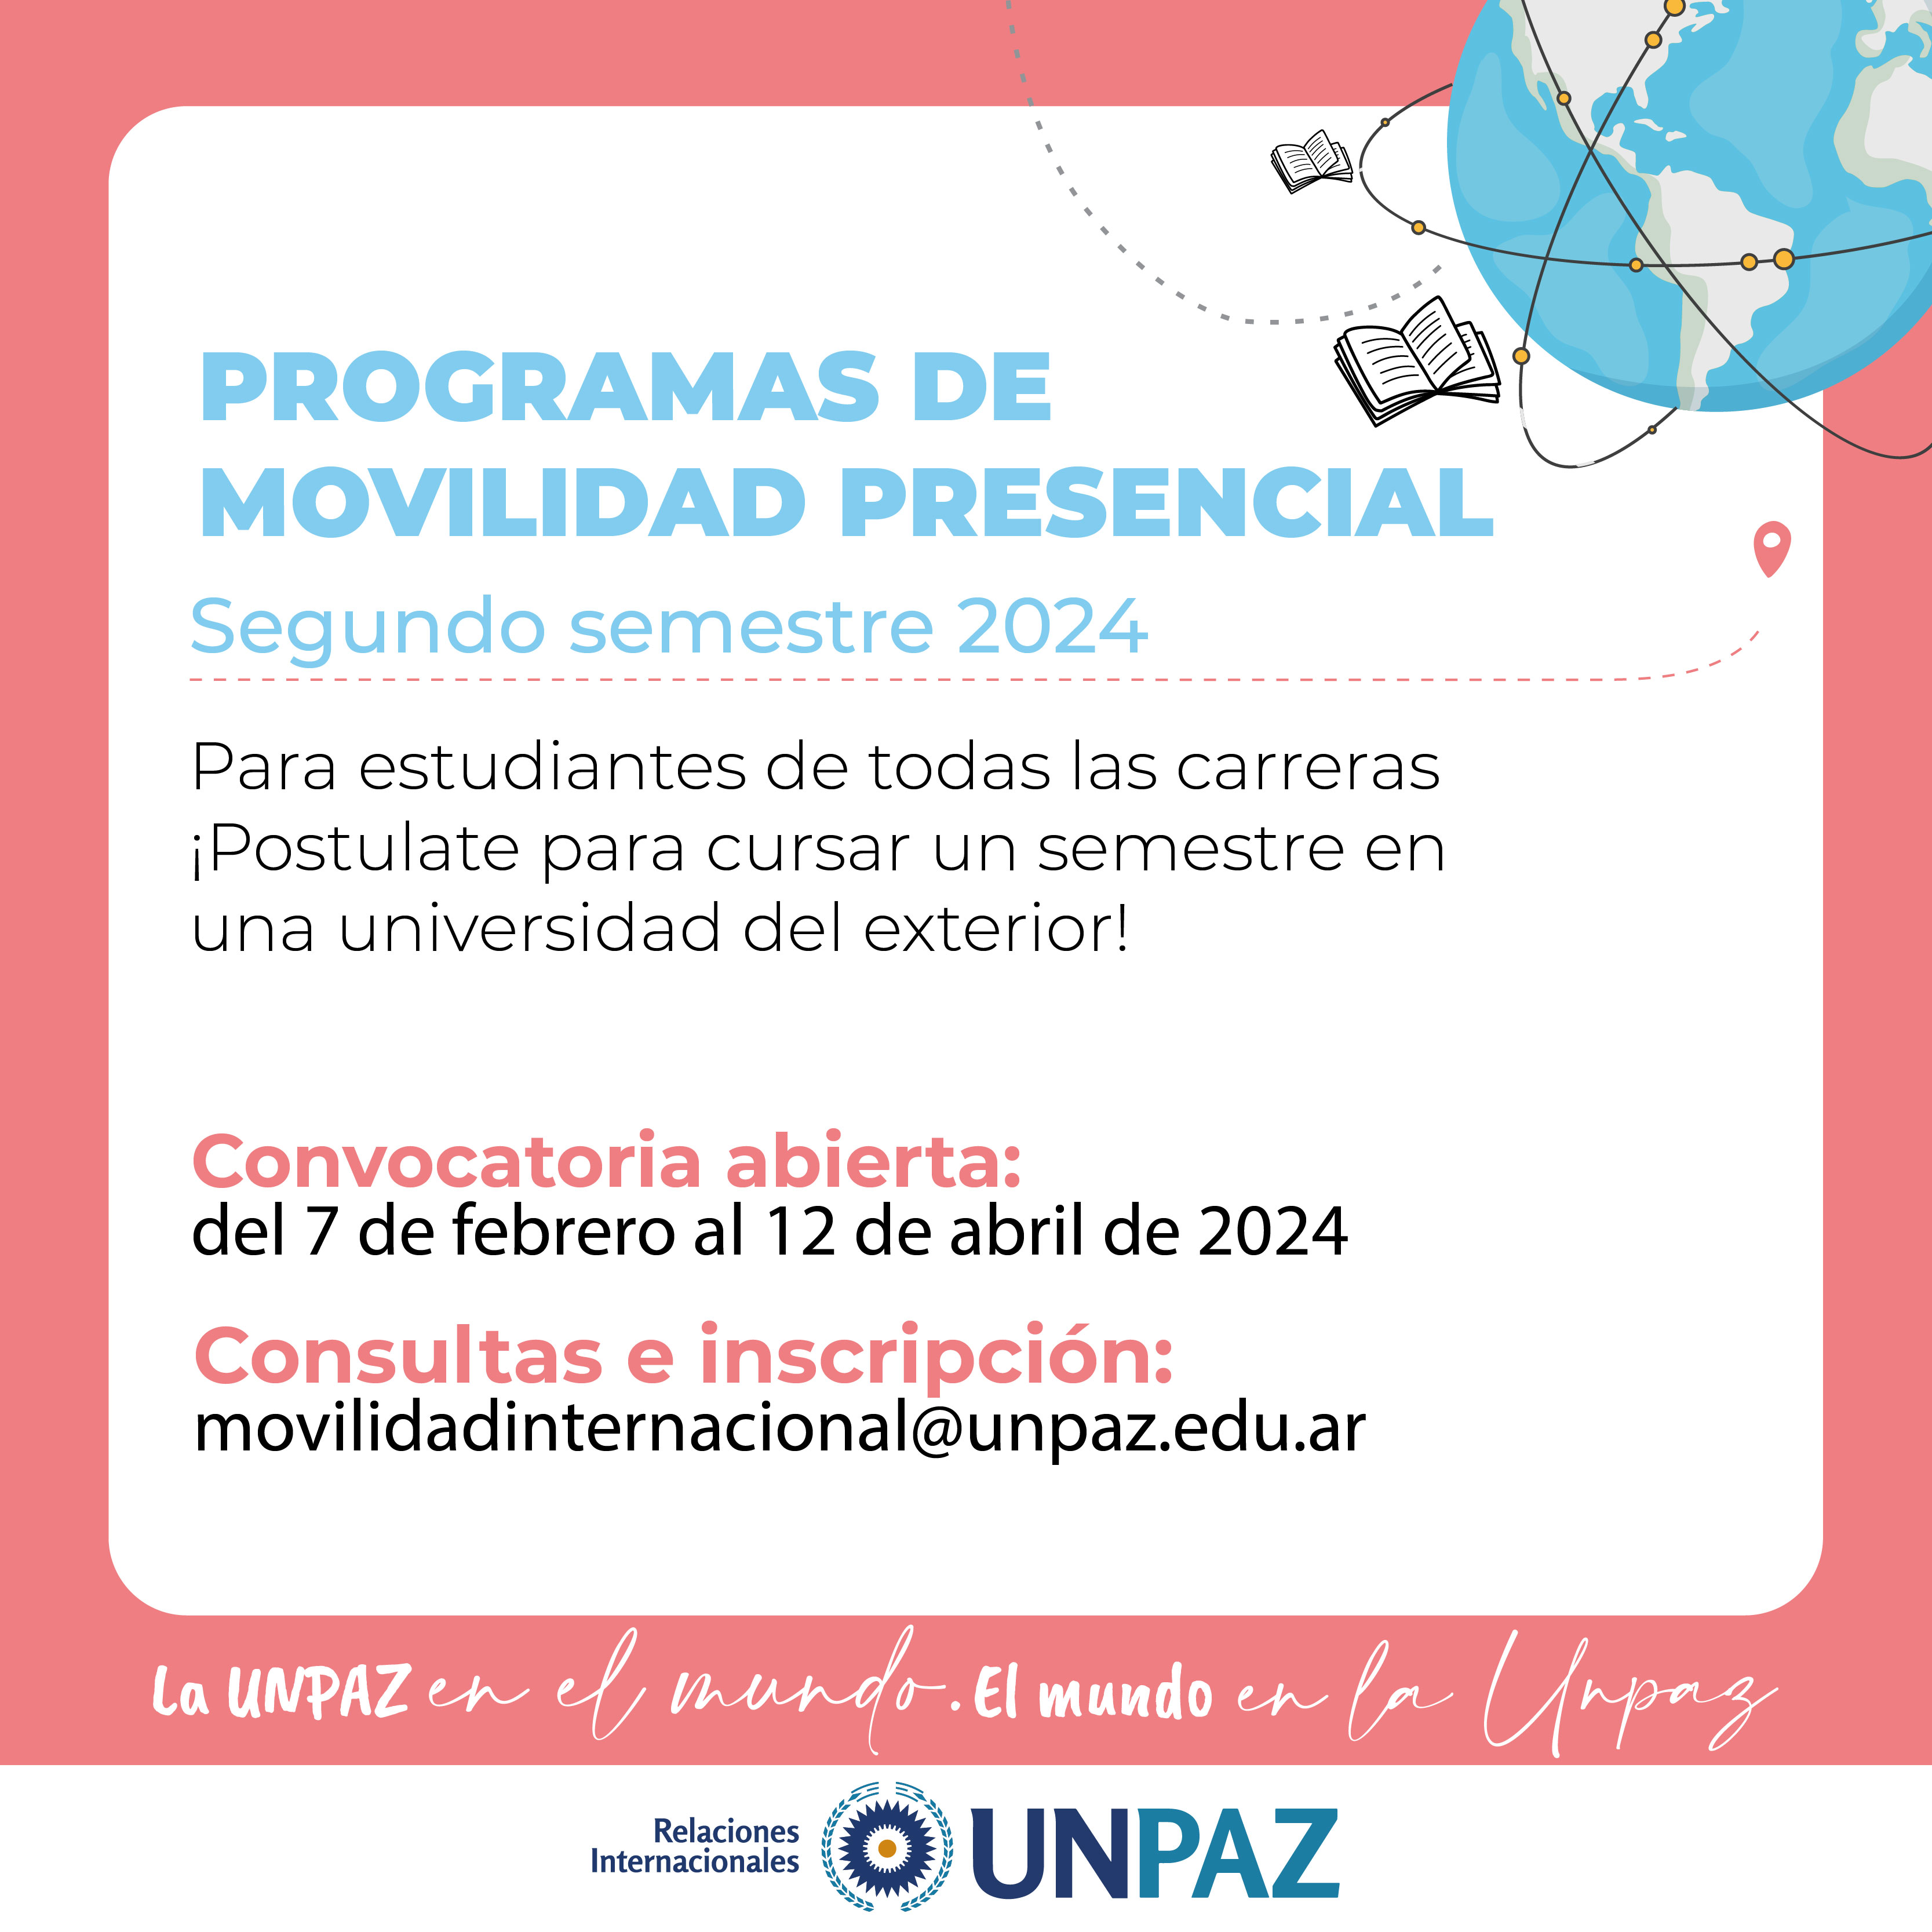 PROGRAMAS DE MOVILIDAD PRESENCIAL 2-2024 - UNPAZ